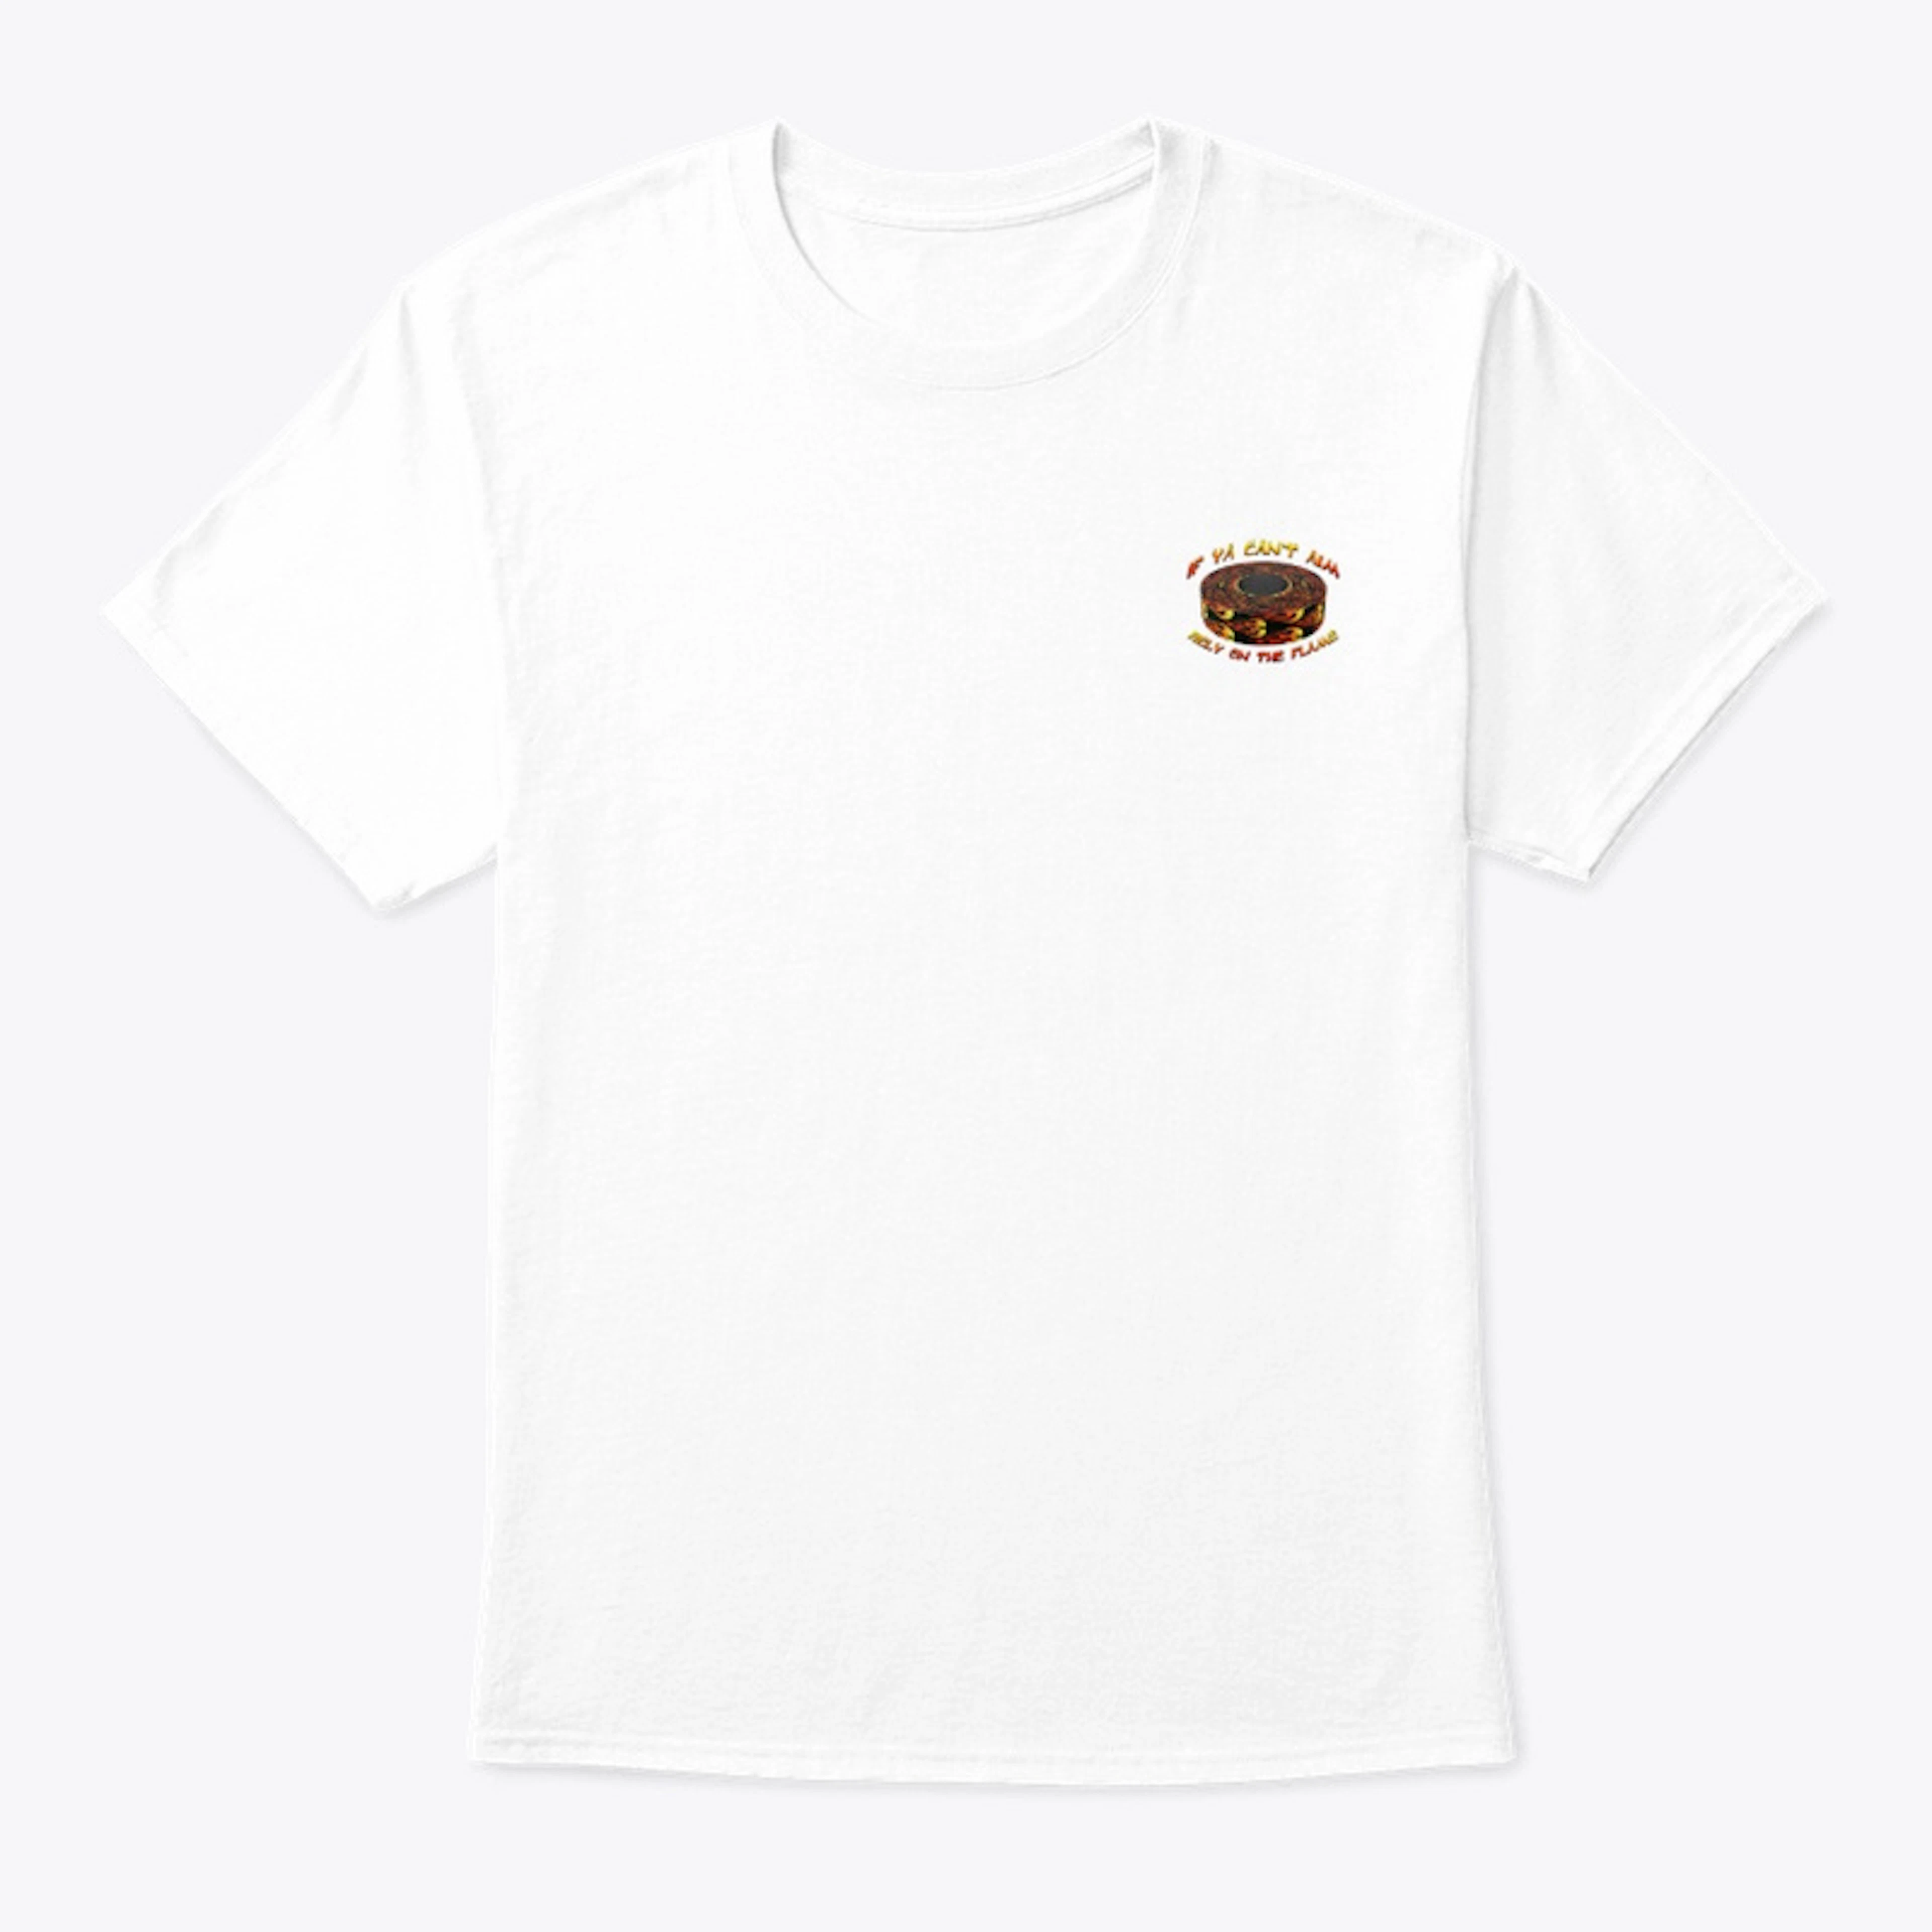 "White" Flame Tape Shirt